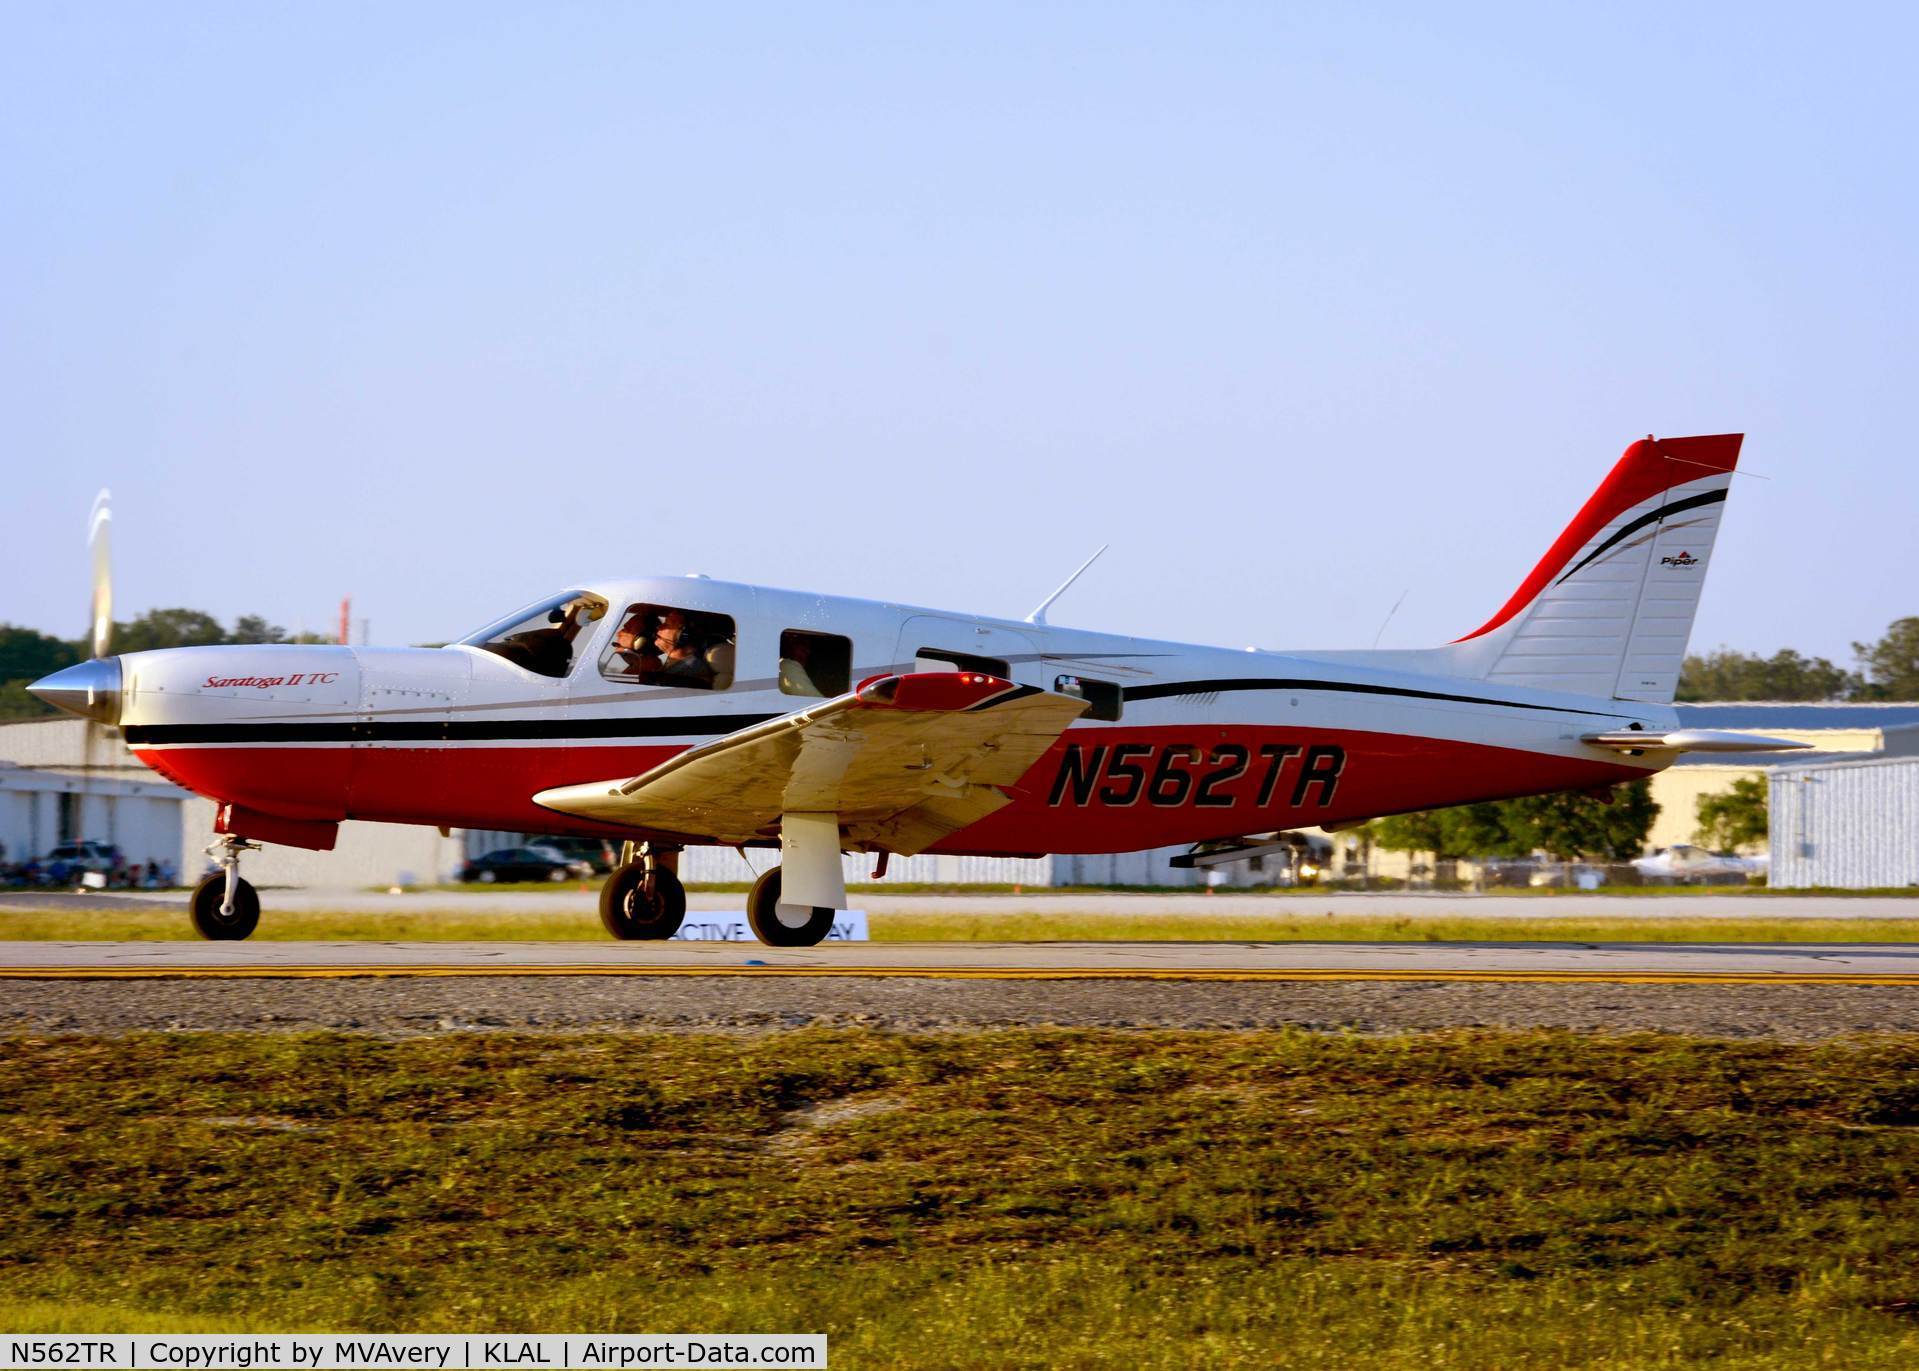 N562TR, 2007 Piper PA-32R-301T Turbo Saratoga C/N 3257453, 2014 Sun n Fun